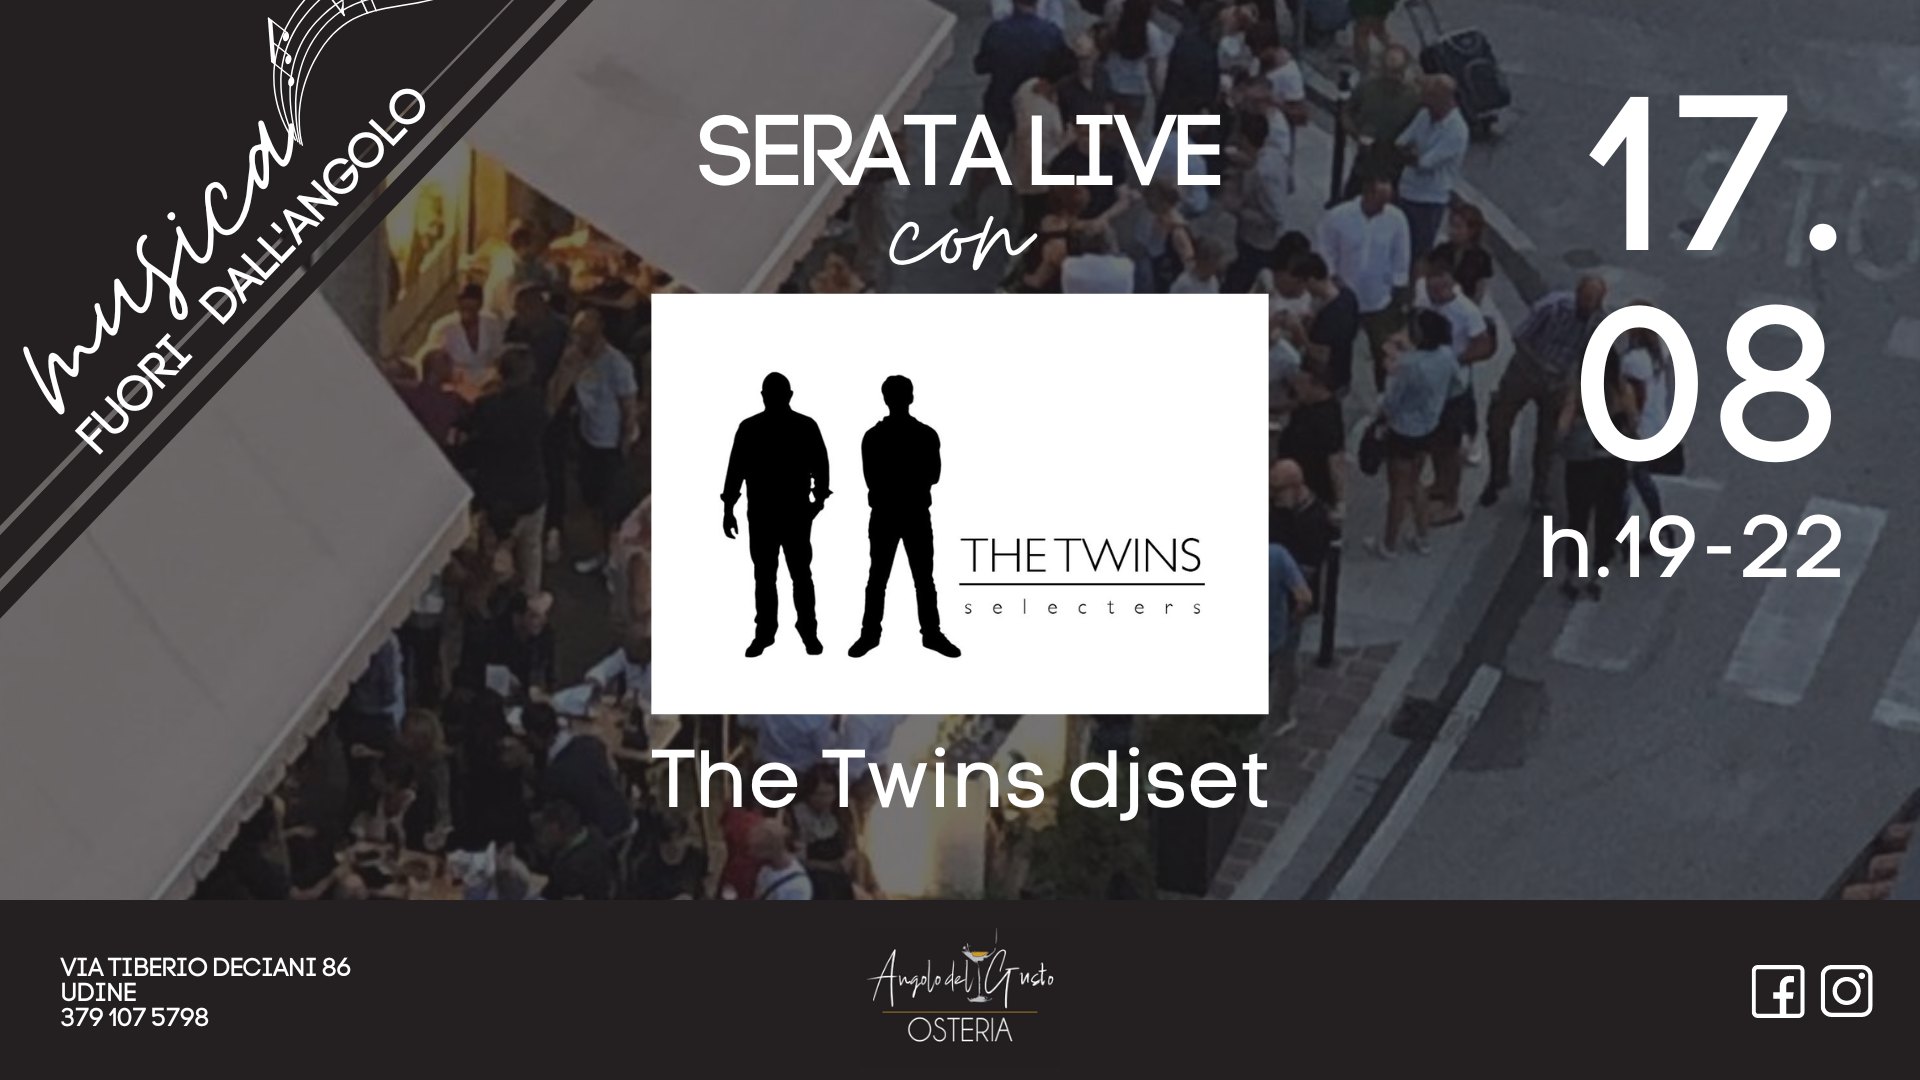 Musica fuori dall'Angolo | Serata live con i The Twins djset